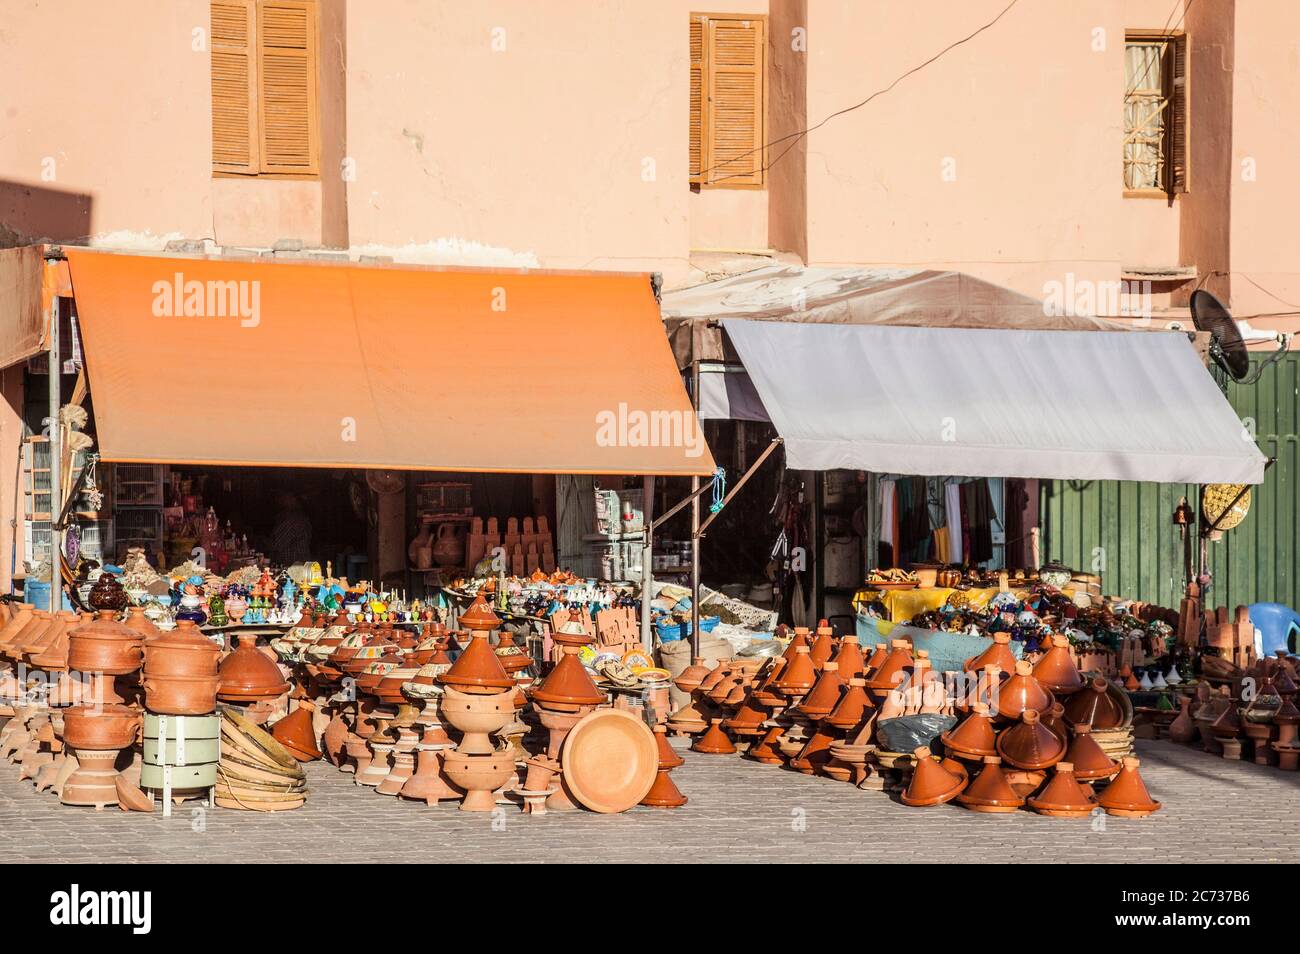 Negozio di ceramiche nel centro di Ourzazate, Marocco centro-meridionale, che vende articoli di terracotta come tagine, brocche, pentole e casserole. Foto Stock